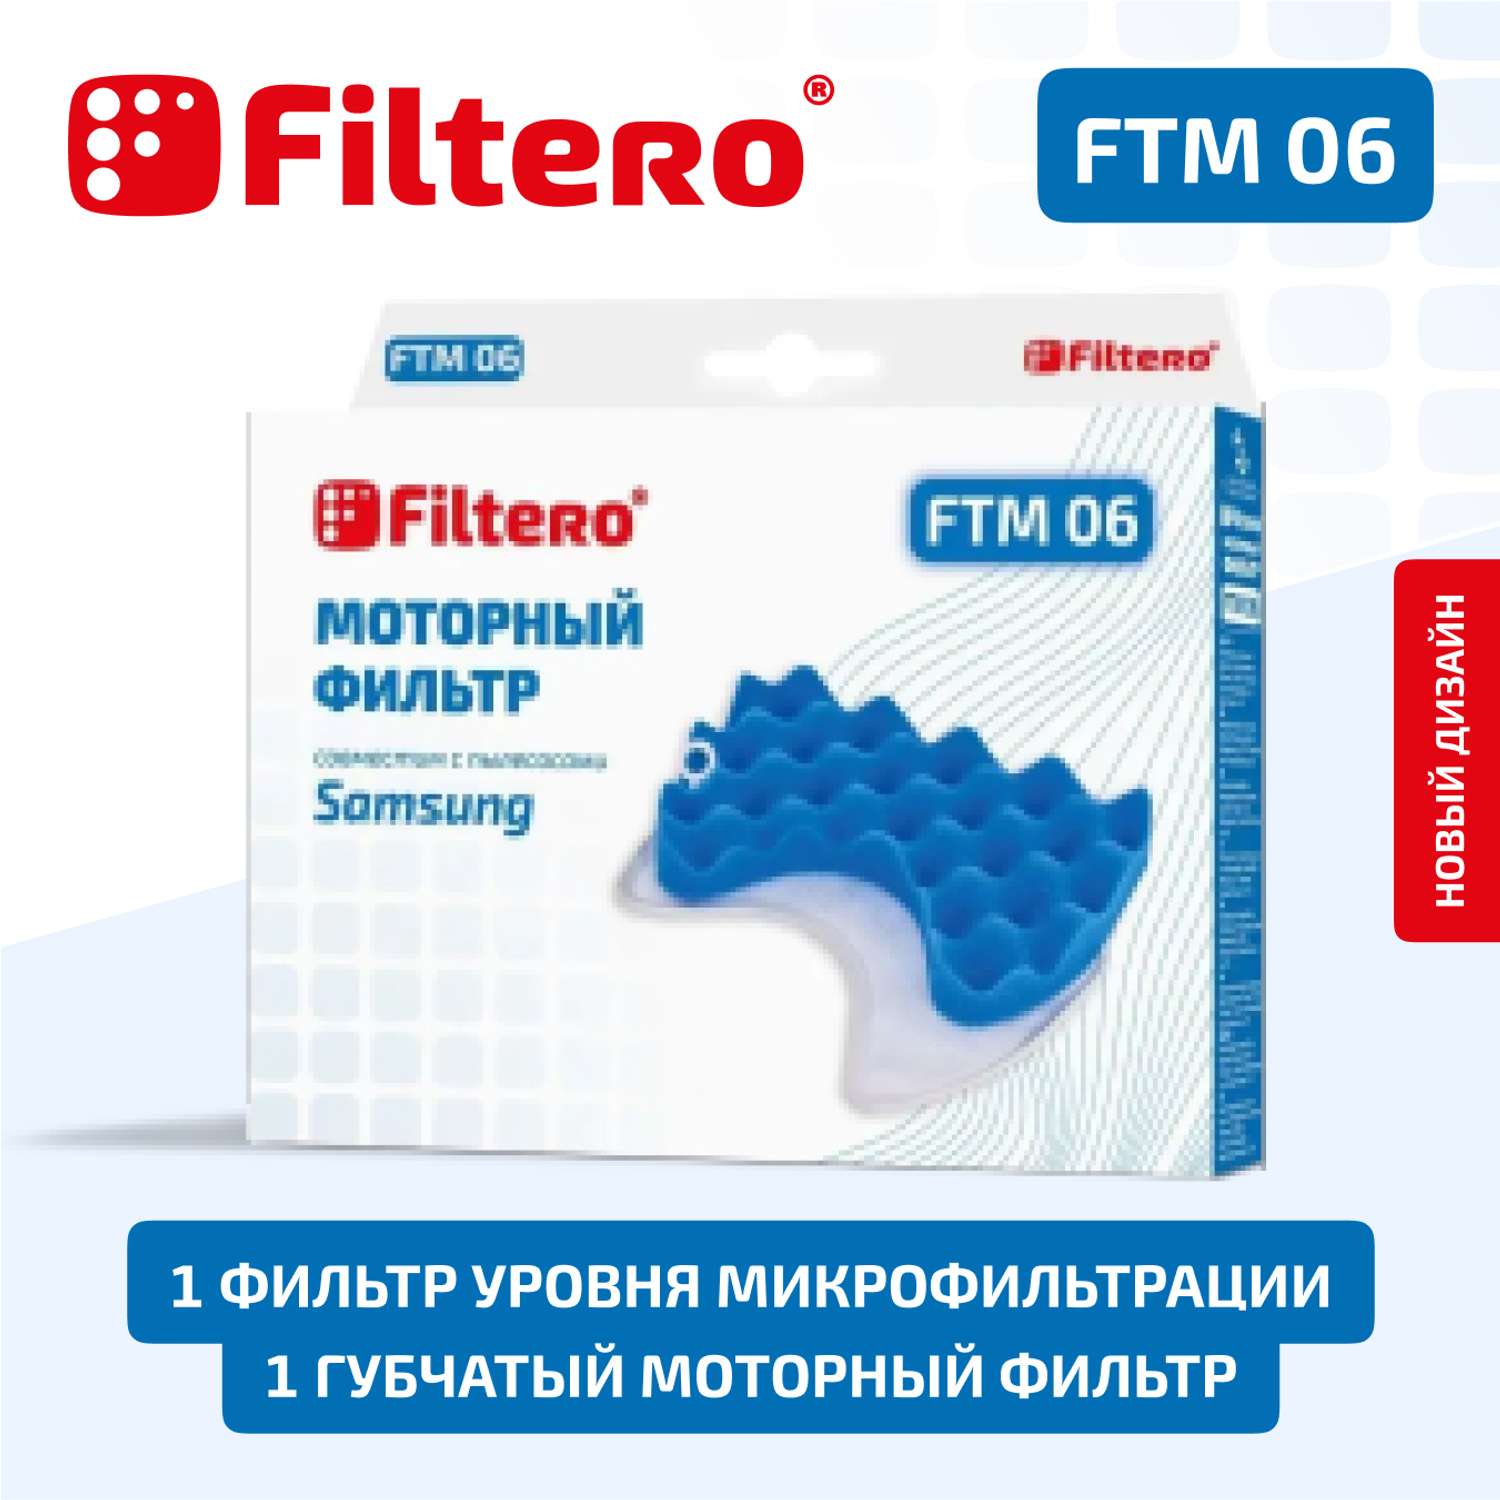 Фильтр моторный Filtero FTM 06 SAM для пылесосов Samsung - фото 1